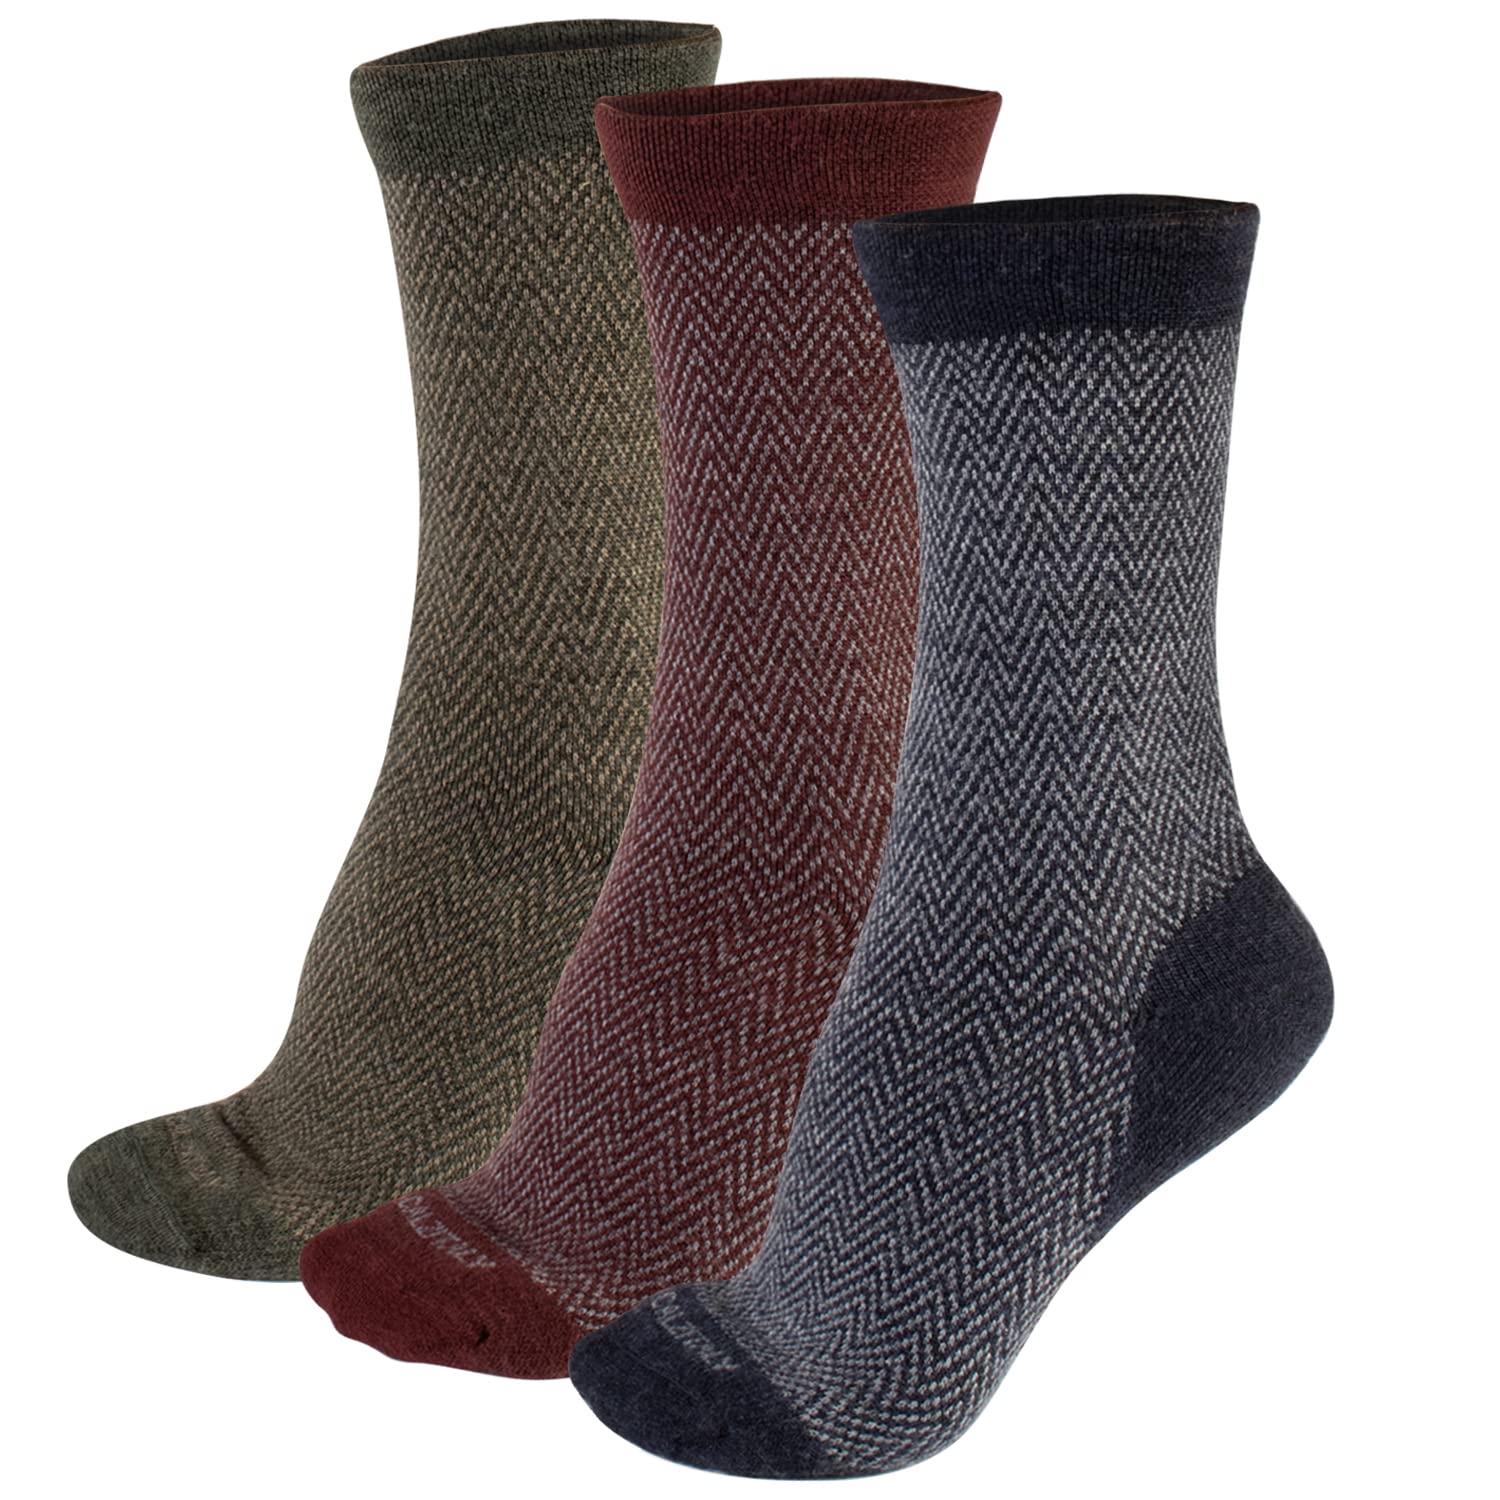 CALZITALY 3 Paar von Socken aus Merinowolle mit Zickzack Muster | Bordeaux, Grün, Blau | 35/38, 39/42, 43/46 | Made in Italy (43-46, Mehrfarbig)